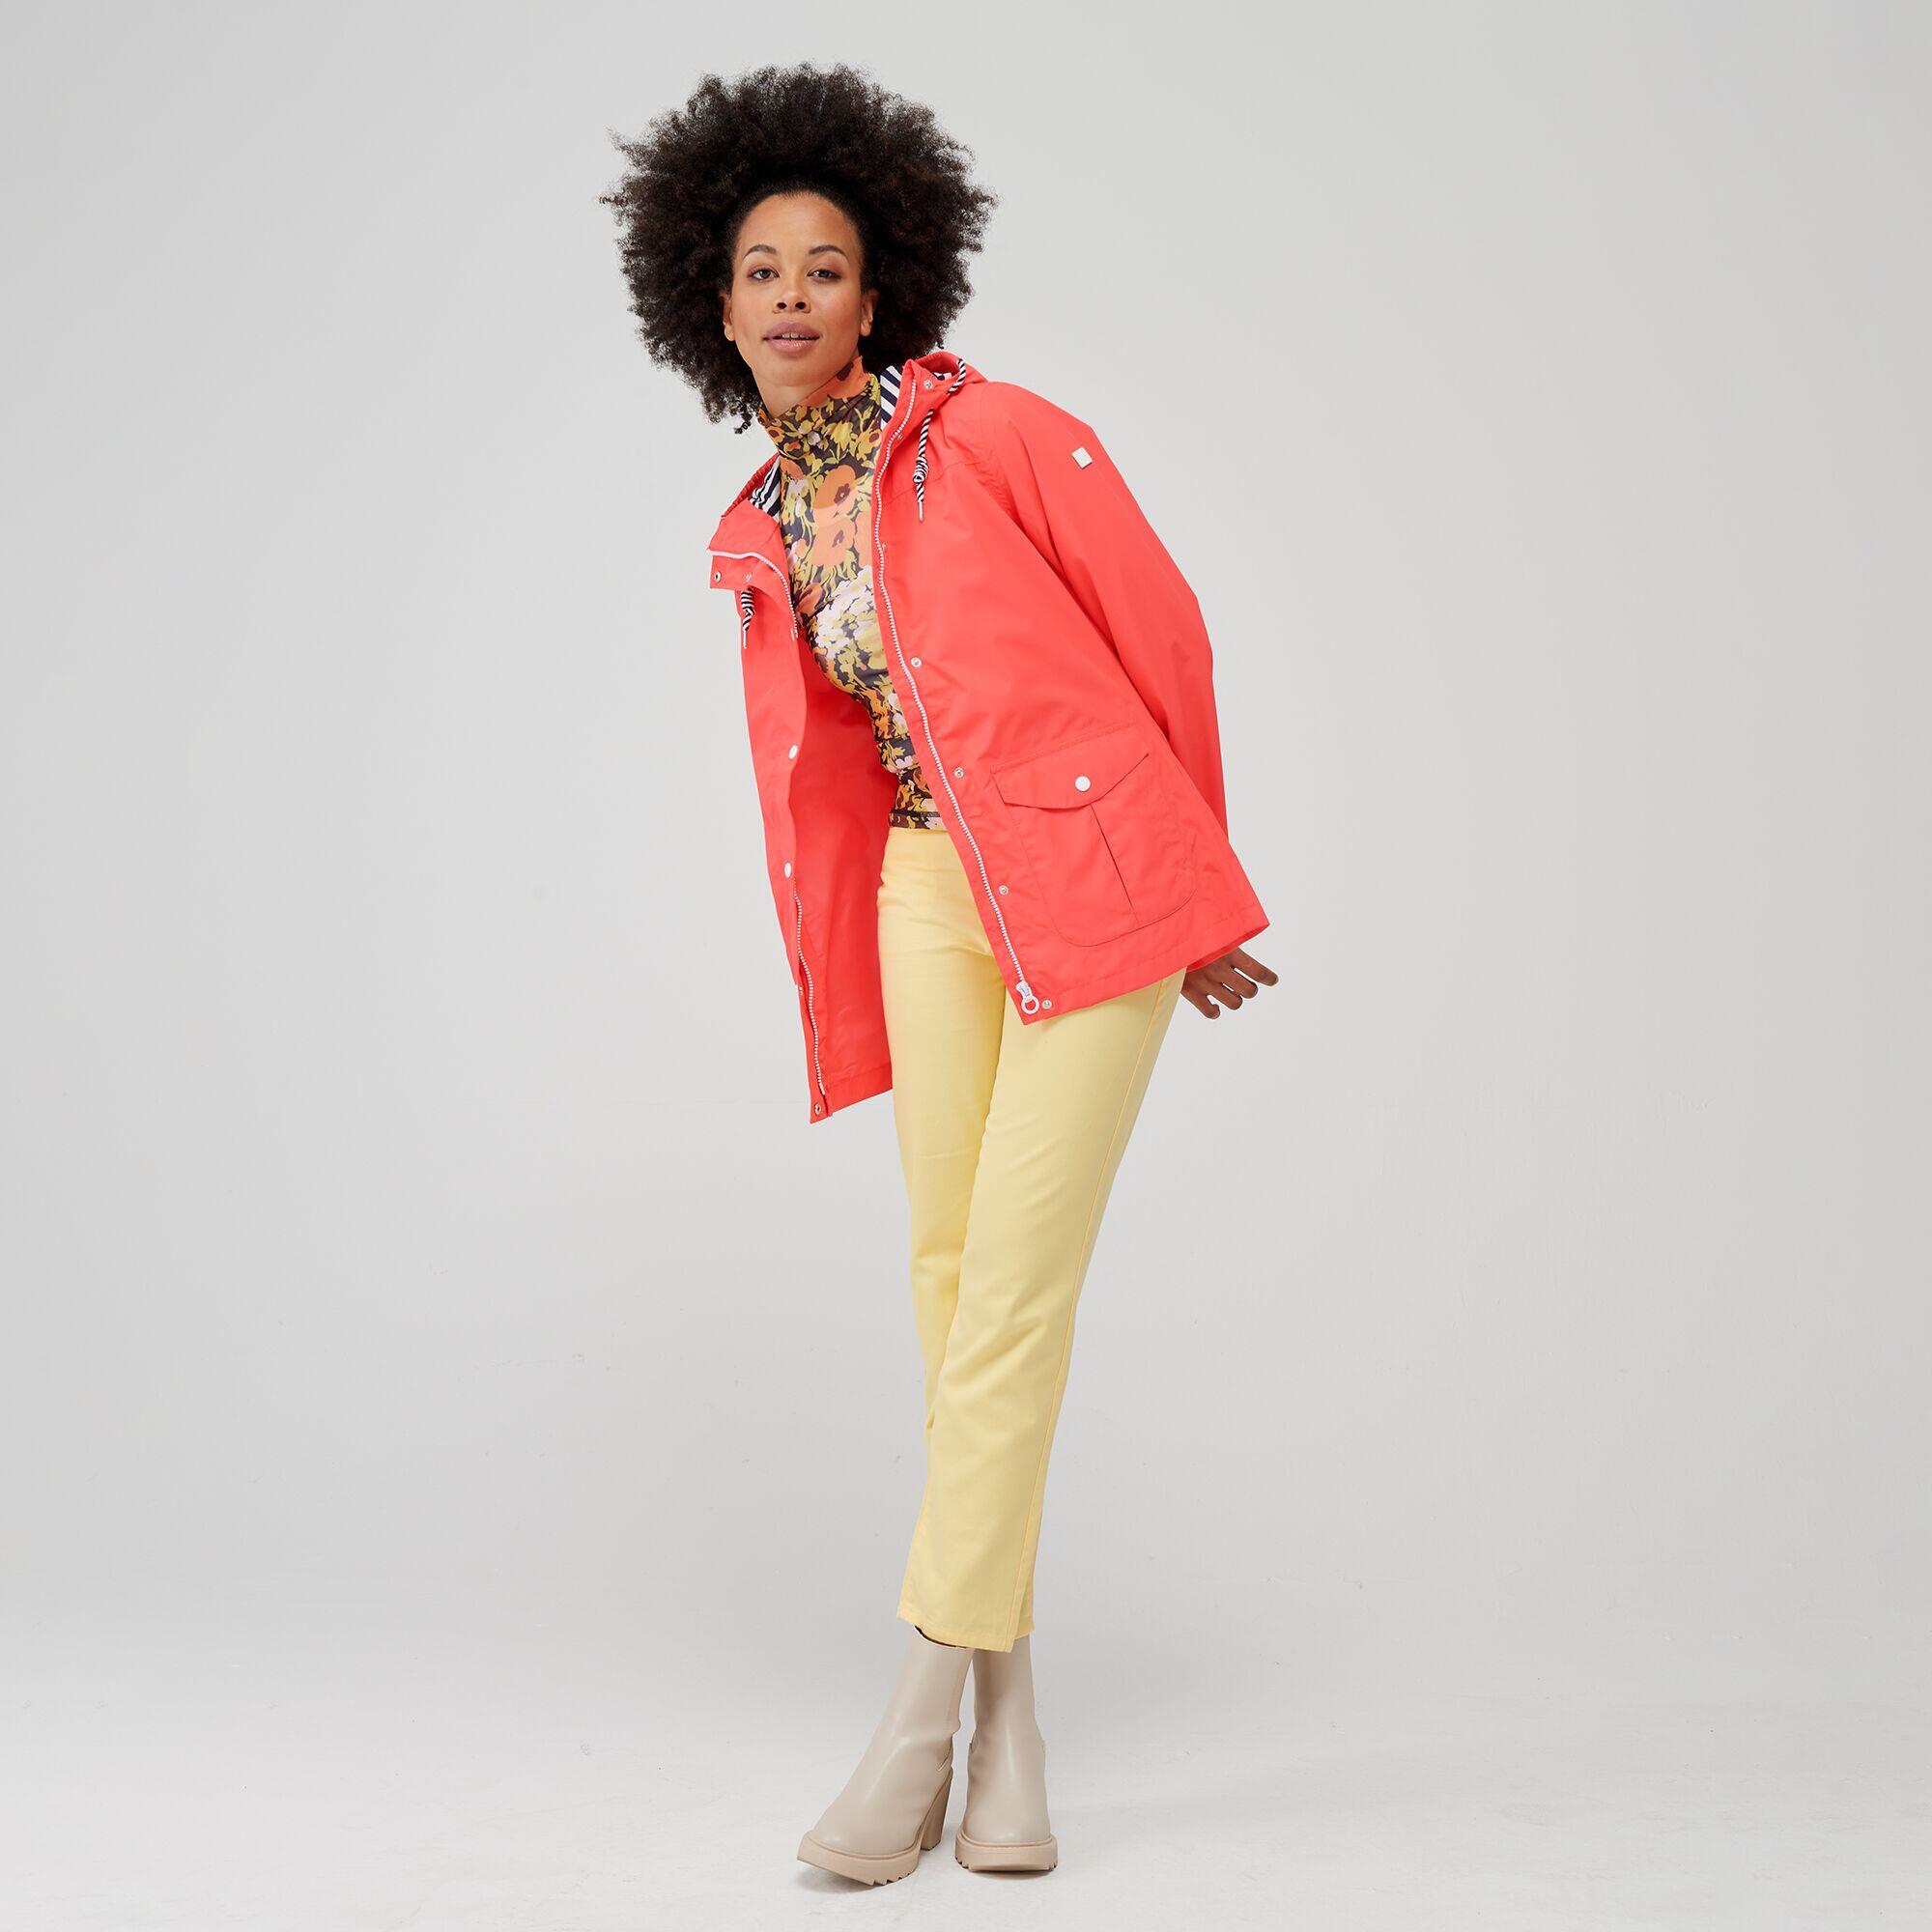 Bayarma Women's Walking Cotton Jacket - Neon Pink 3/6